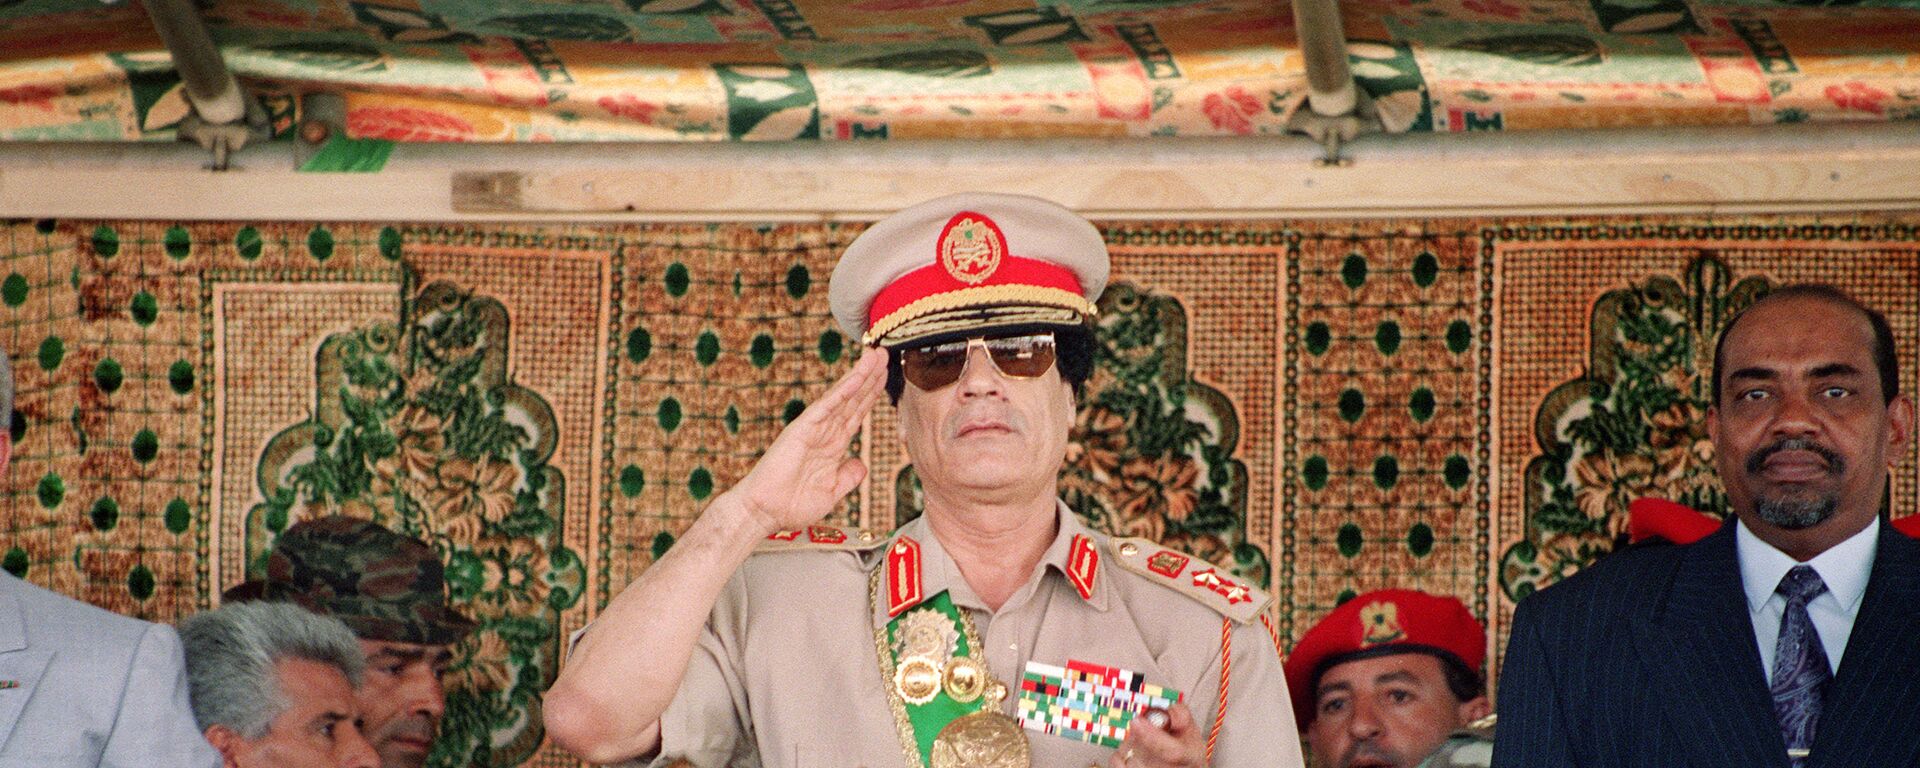 Лидер Ливии Муаммар Каддафи на военном параде в честь 25-летия его прихода к власти в Триполи, 1994 год - Sputnik Србија, 1920, 24.10.2021